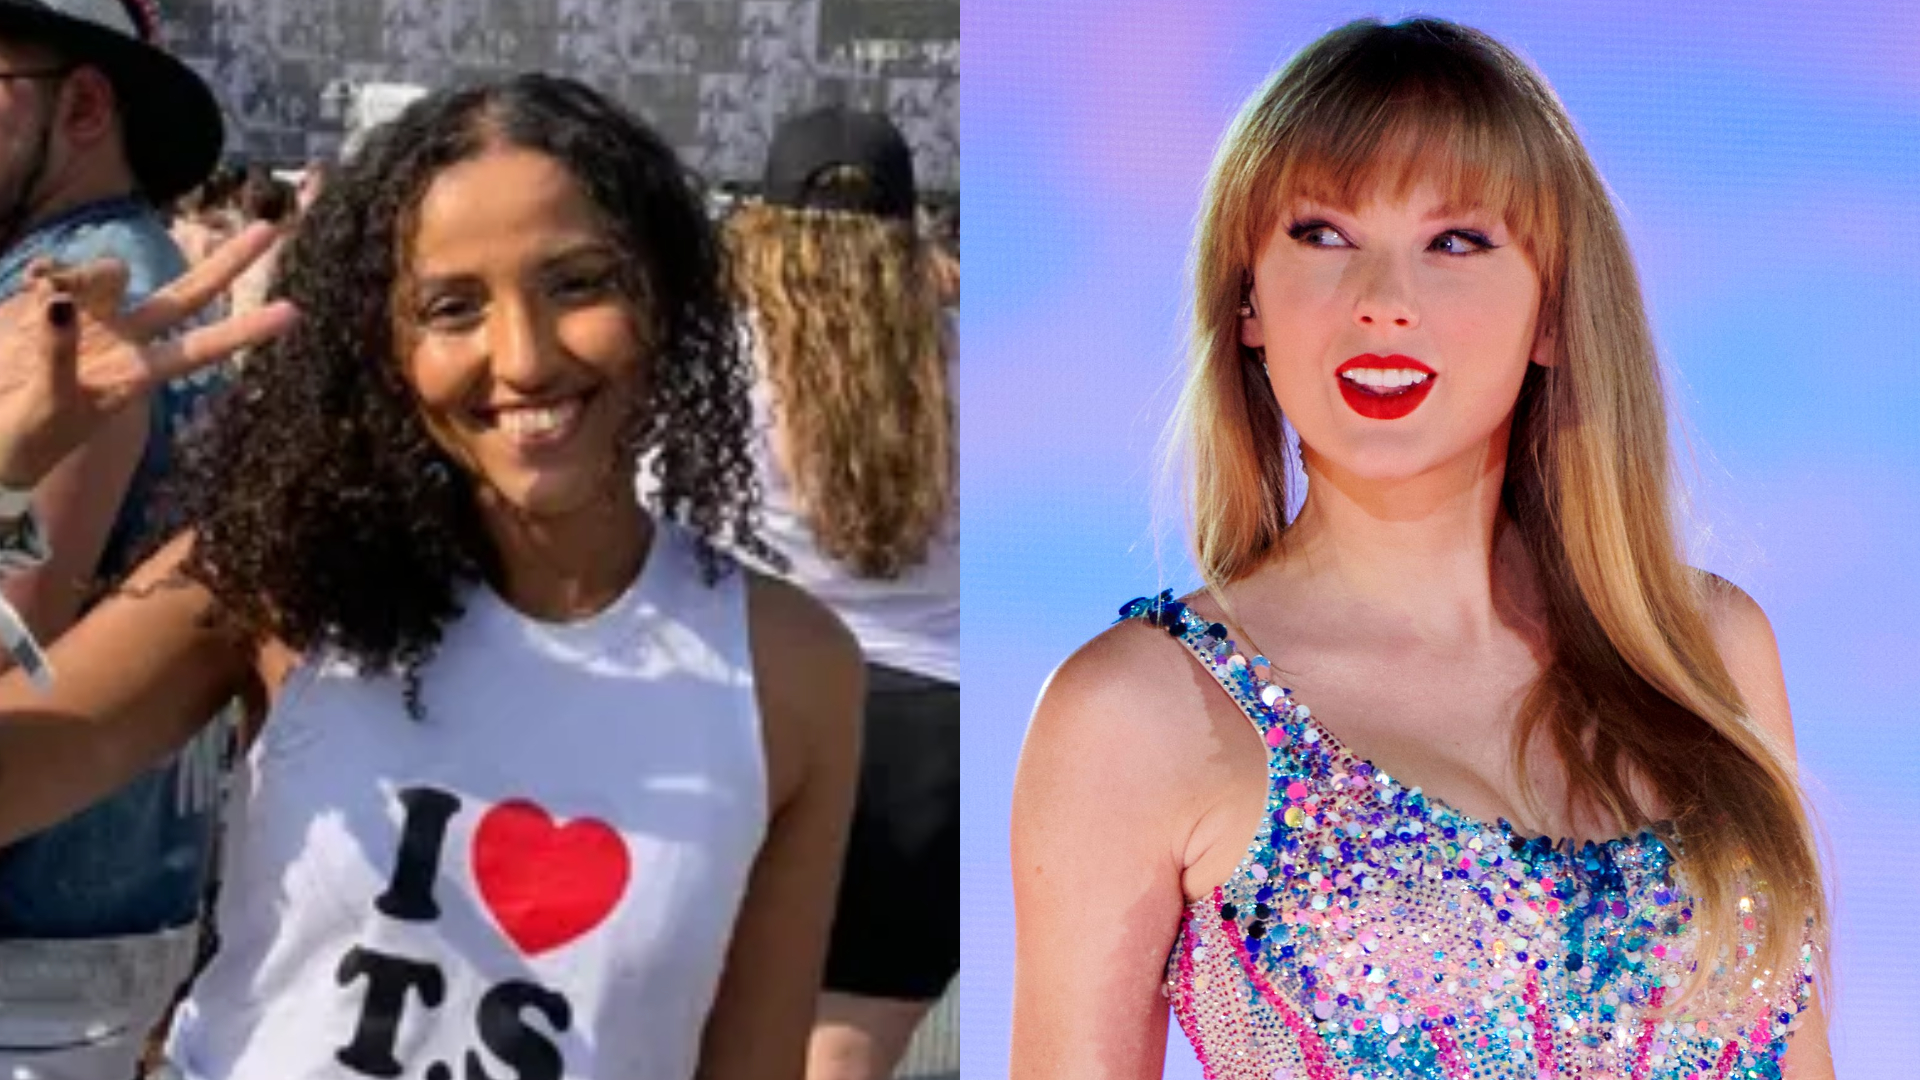 Fã de 23 anos morre durante show de Taylor Swift no RJ após calor extremo; cantora se manifesta e prefeitura anuncia novas medidas